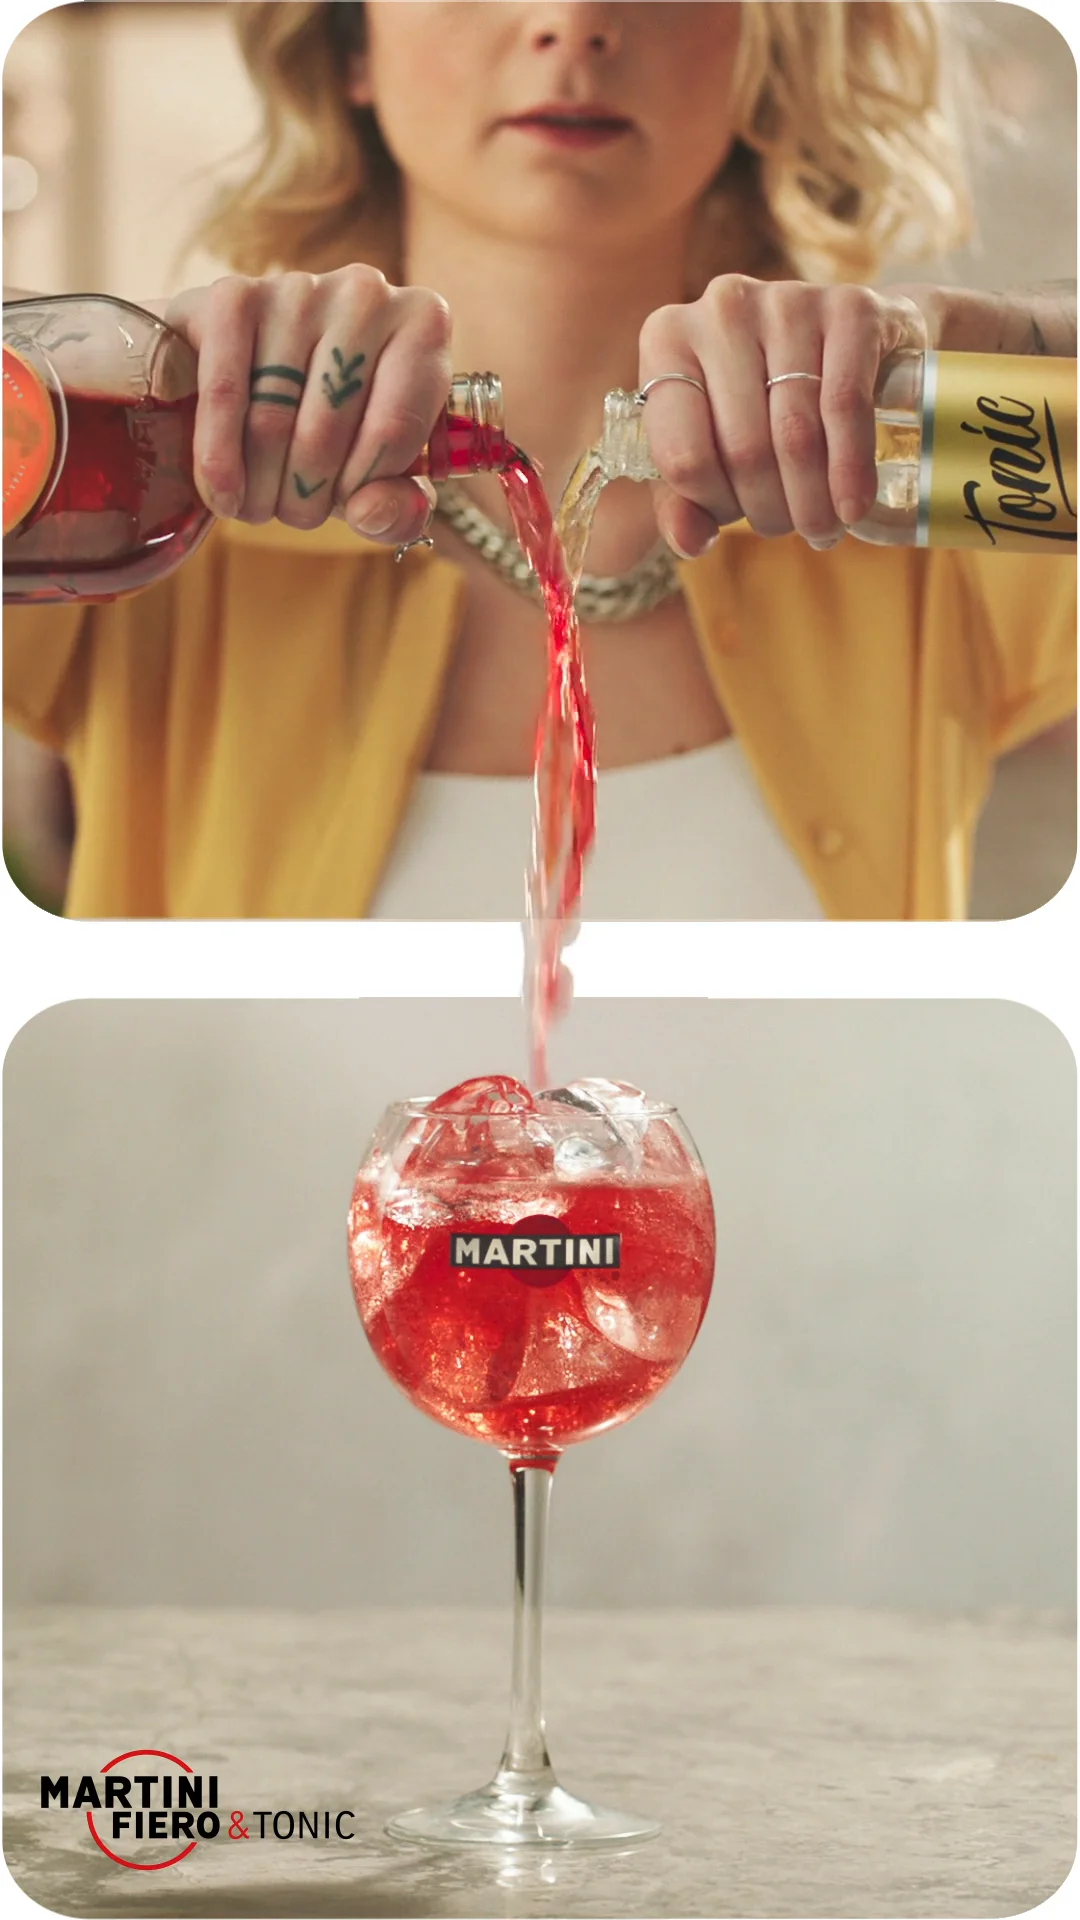 on - Pinterest Fiero Martini Vimeo \'Pour\'